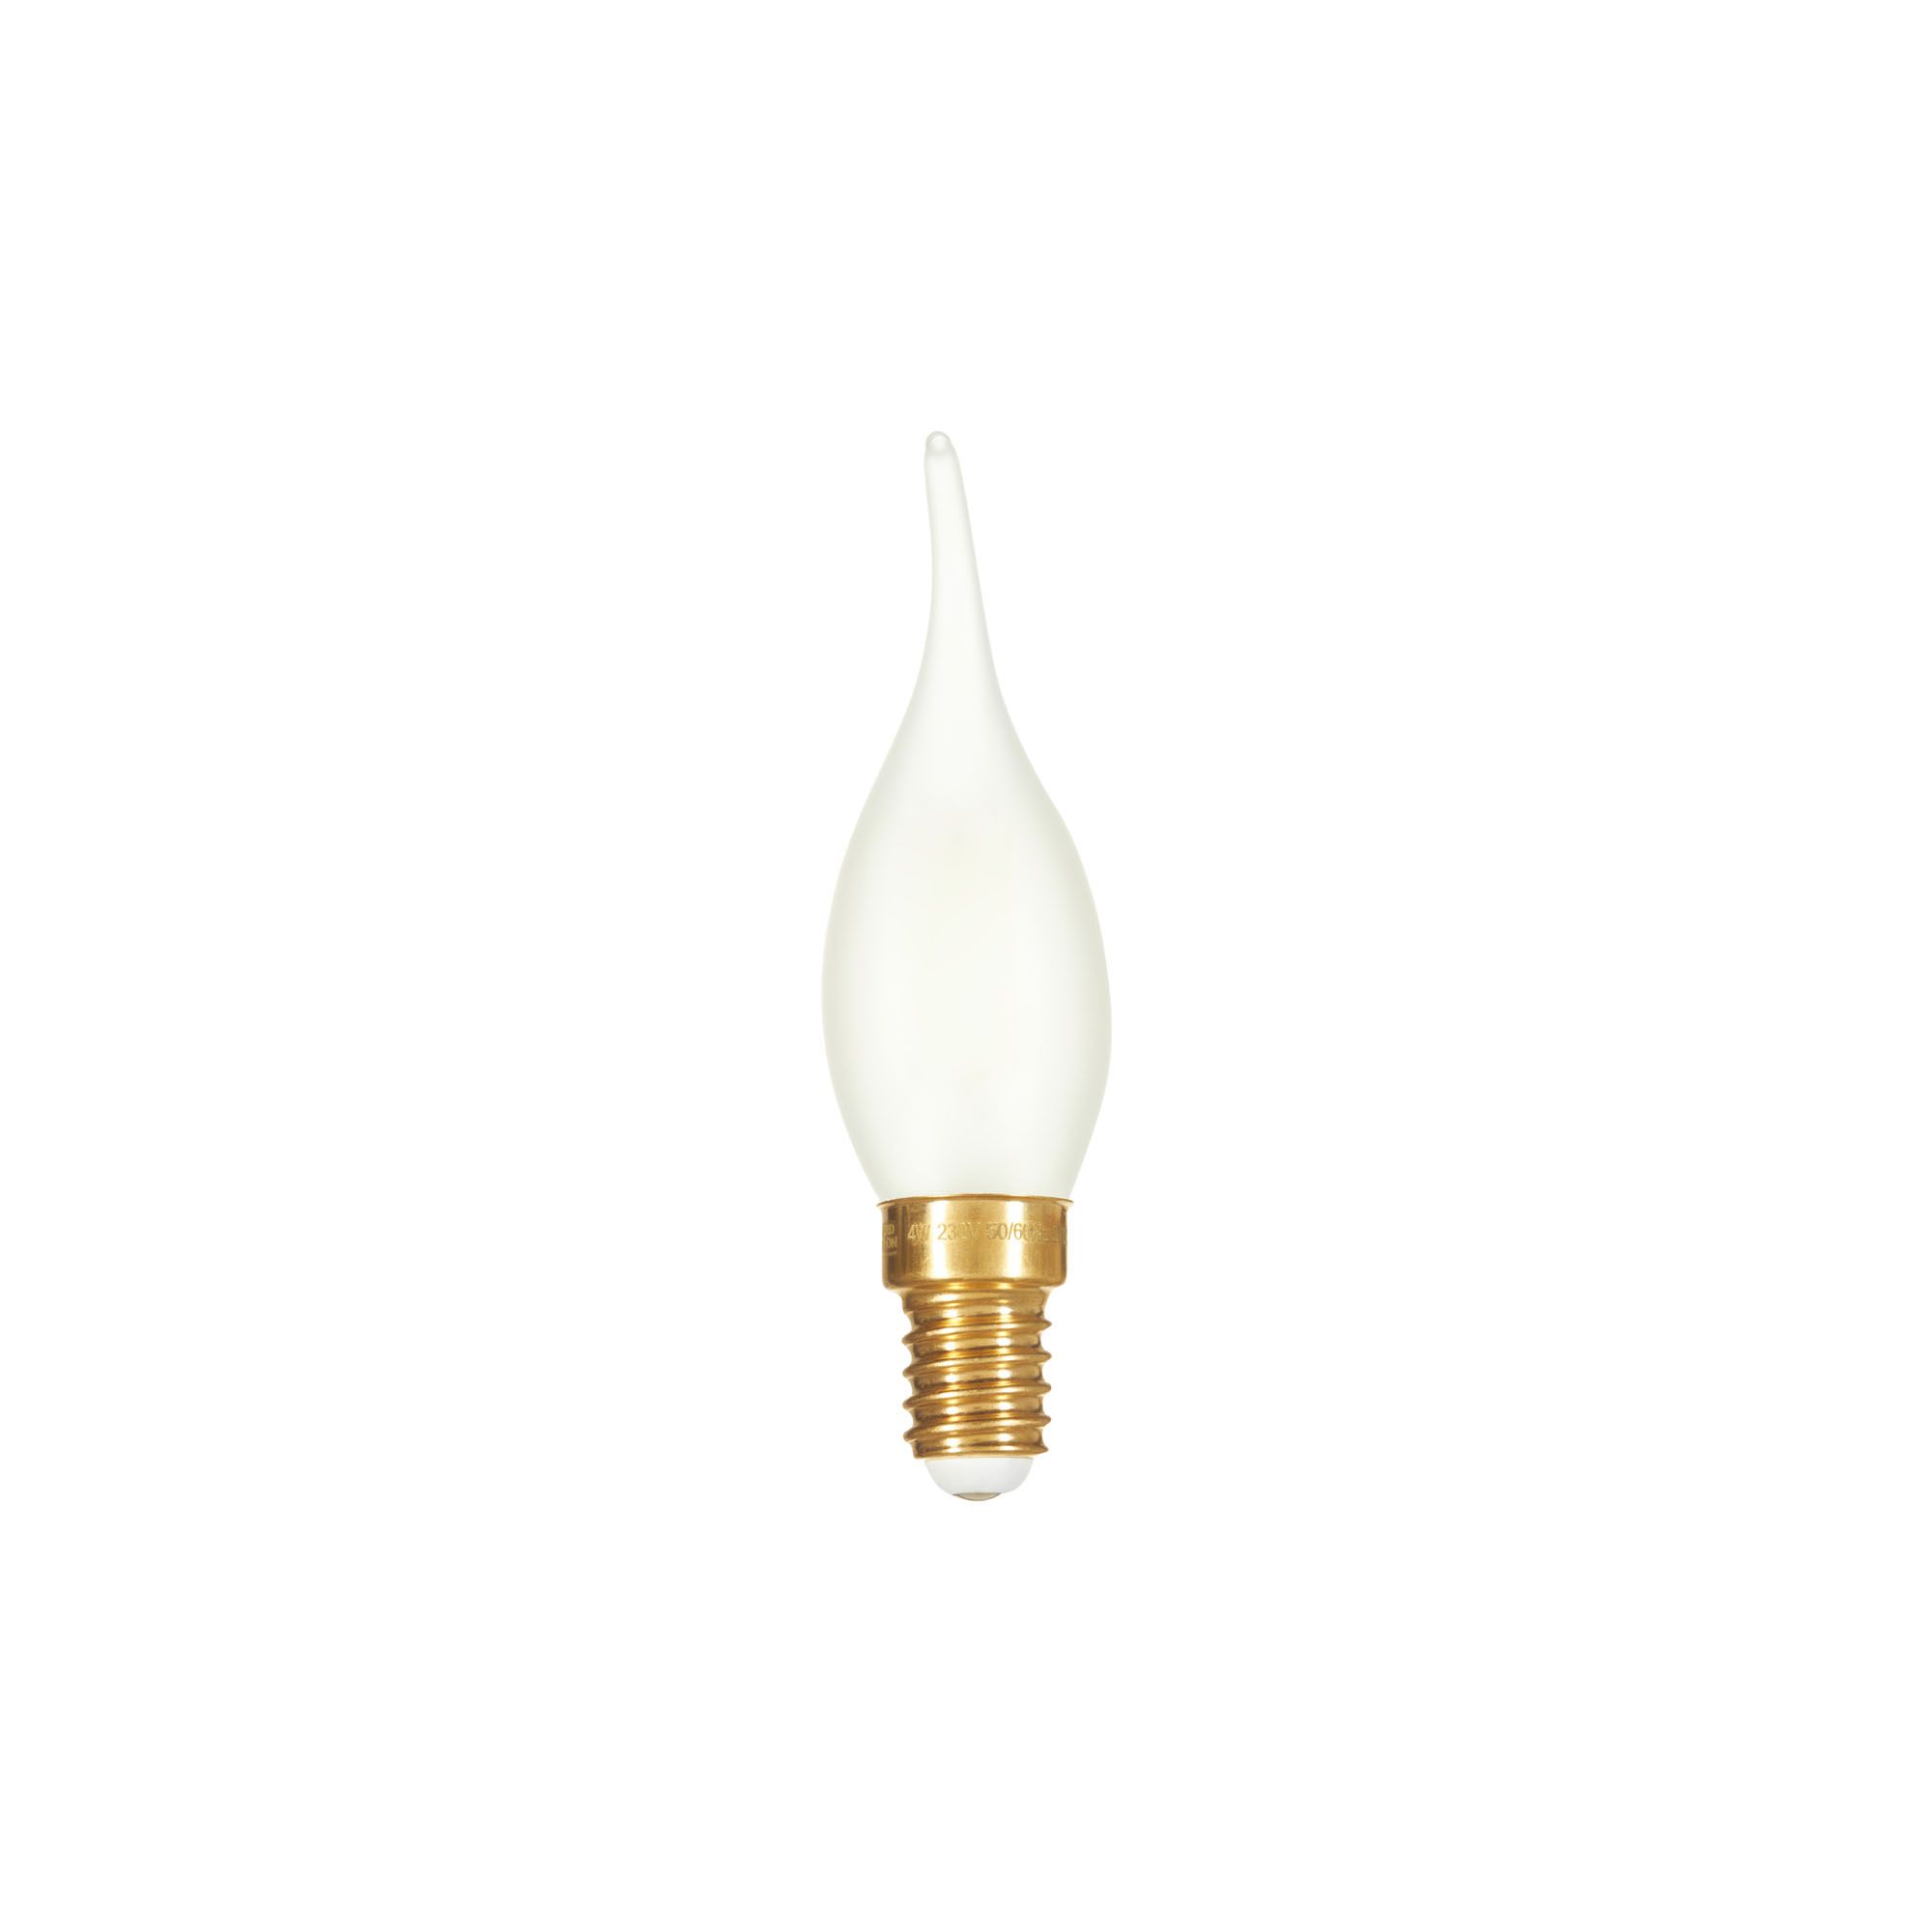 Ampoule filament LED flamme torsadée géante - 4W, Culot B22, 230V